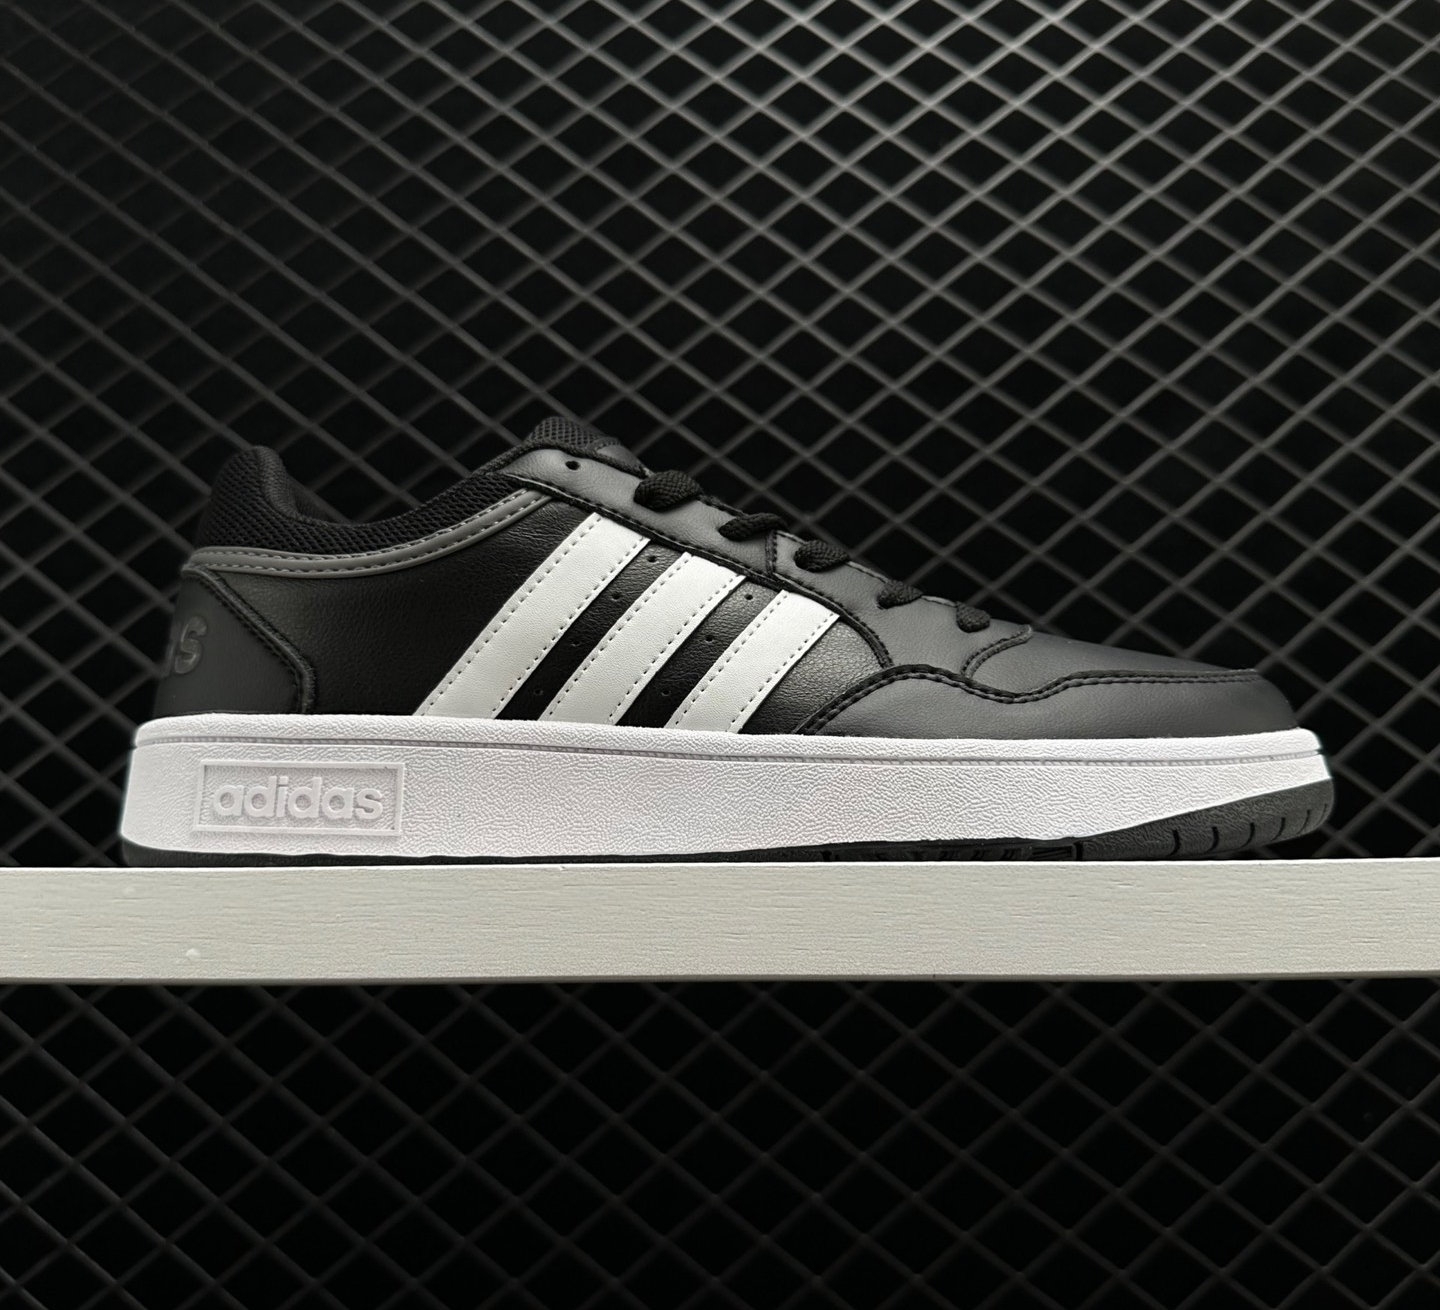 Adidas Hoops 3.0 Low 'Core Black Grey' GY5432 - Stylish Athletic Footwear